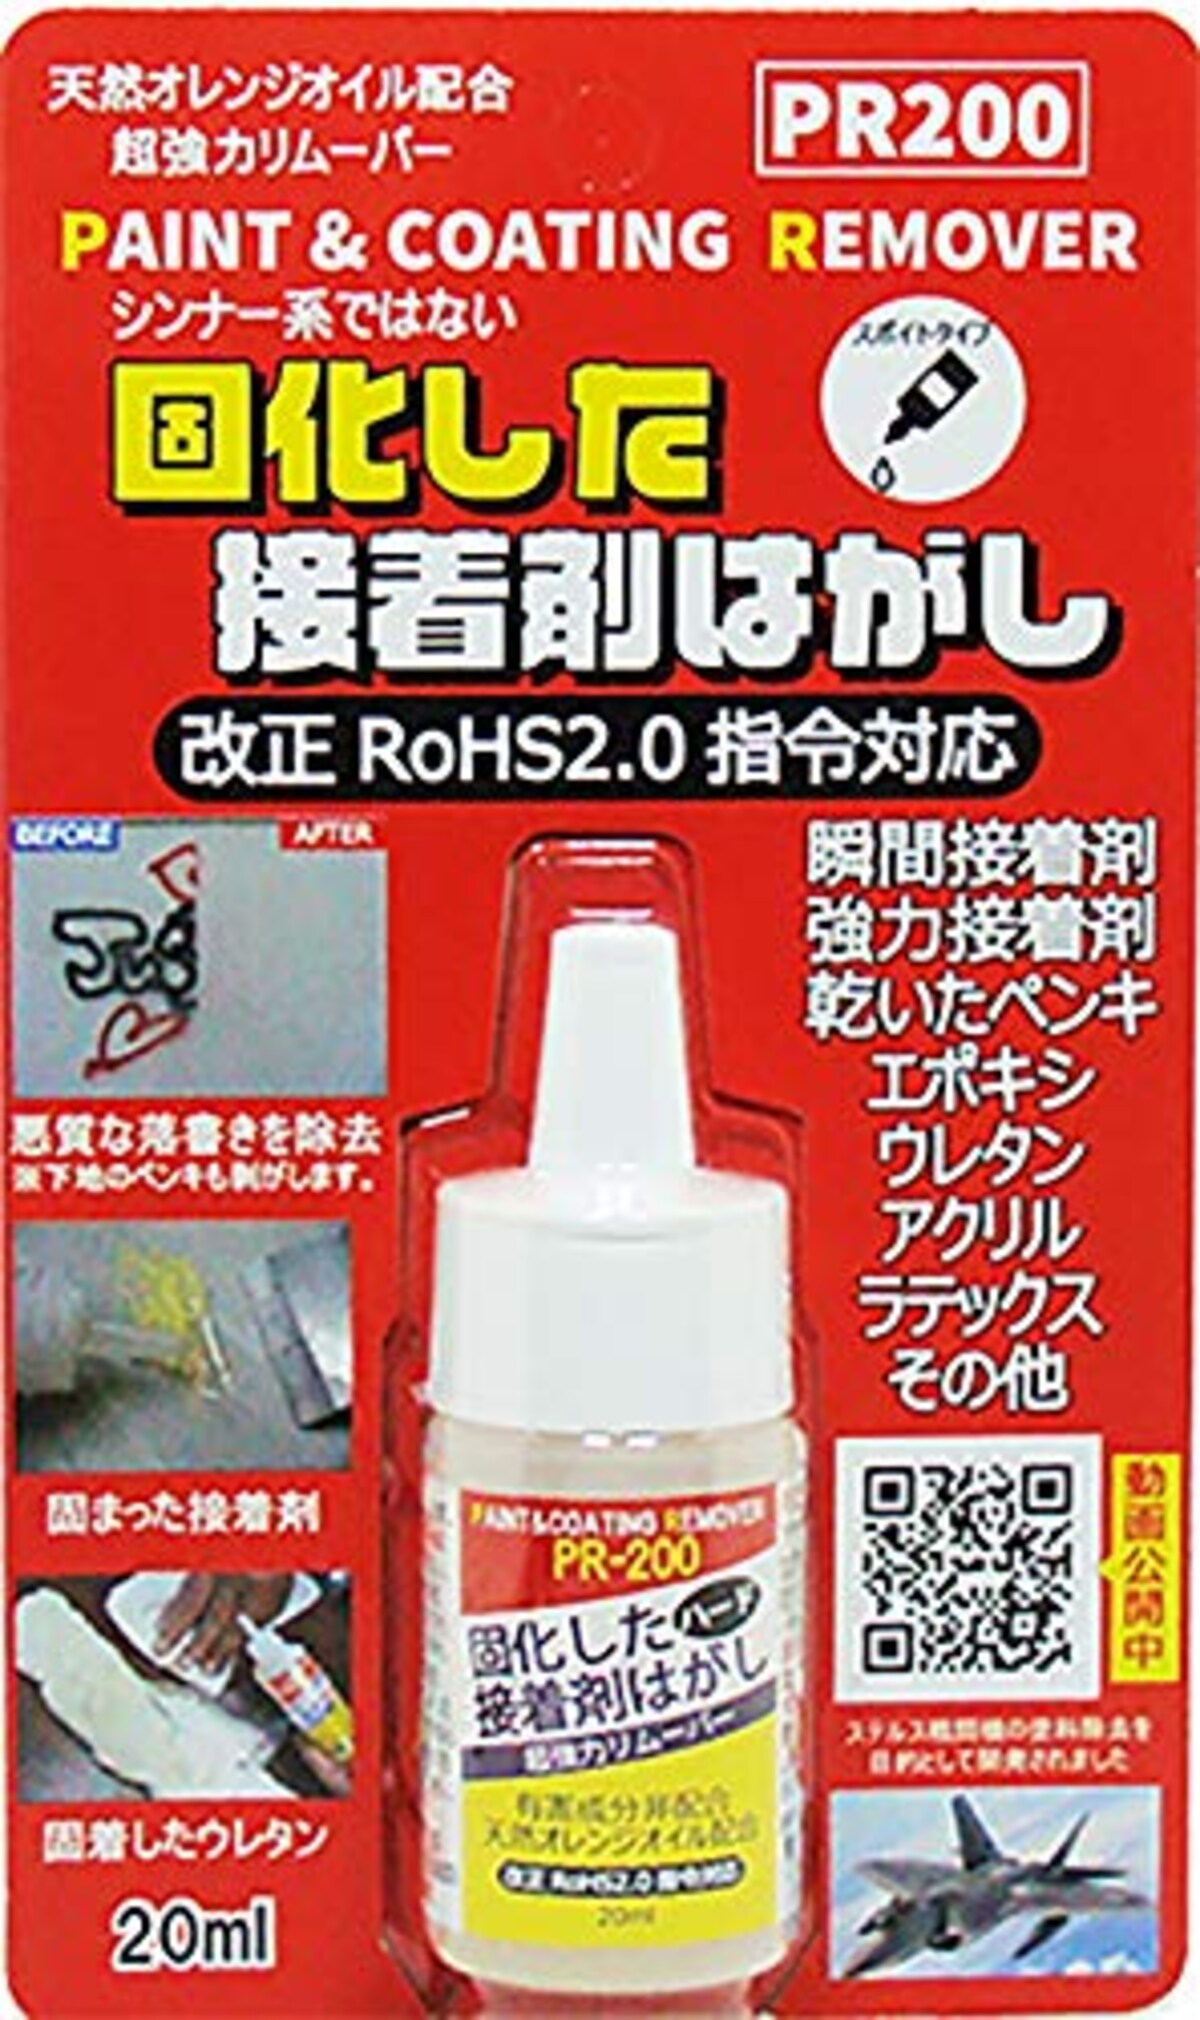 ドーイチ(Doichi)のハード接着剤はがし液 PR200 お試しミニタイプ 価格比較・レビュー評価 Best One（ベストワン）